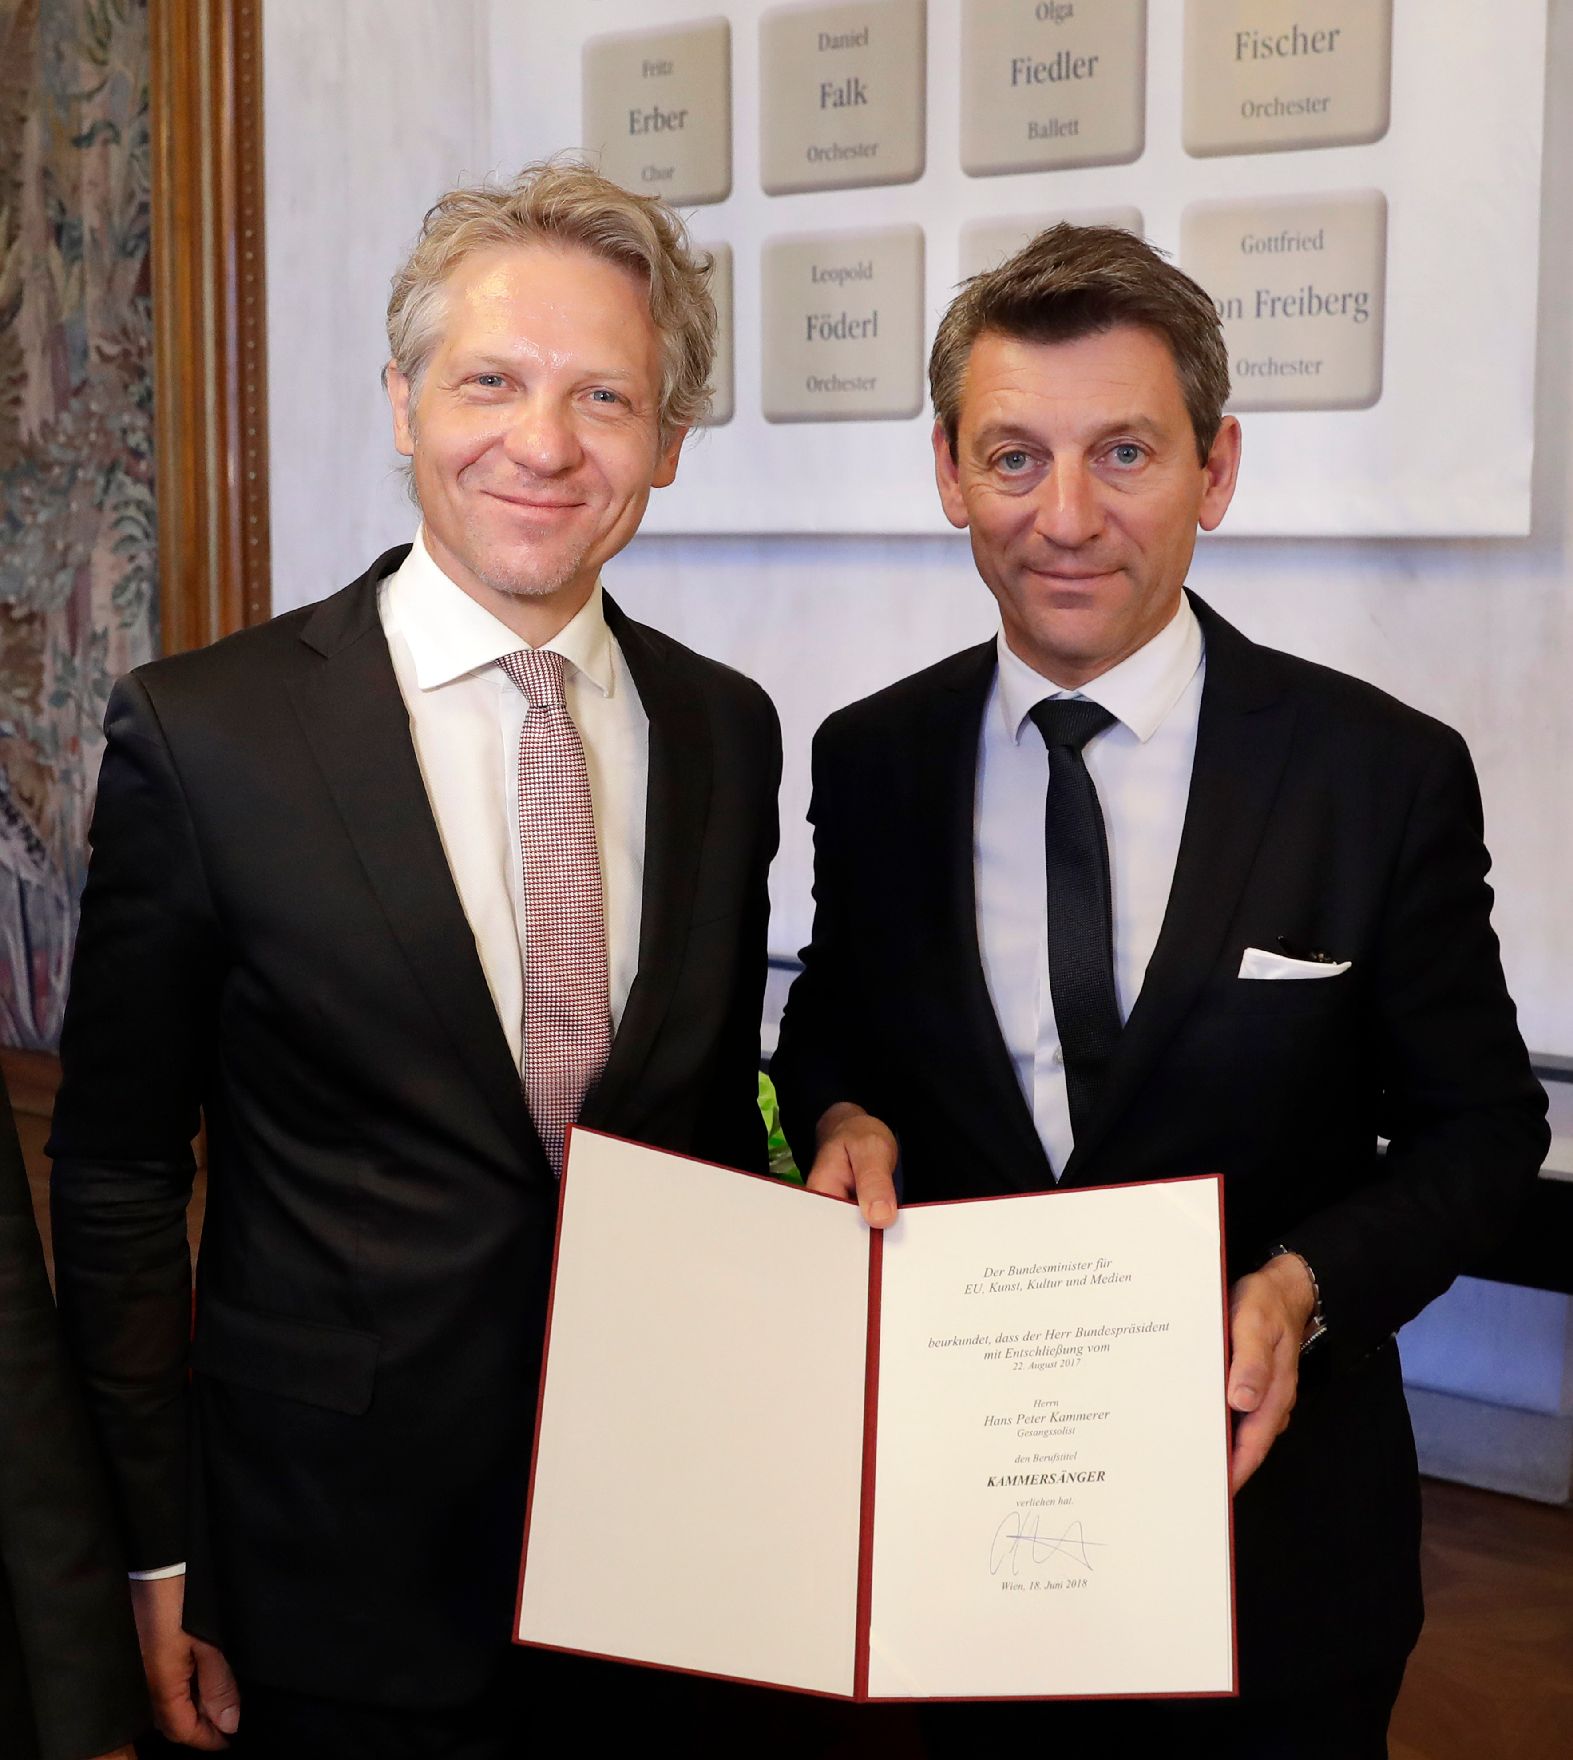 Am 18. Juni 2018 überreichte Sektionschef Jürgen Meindl (r.) die Urkunde, mit der Hans Peter Kammerer (l.) und Benedikt Kobel der Berufstitel Kammersänger verliehen wurde.